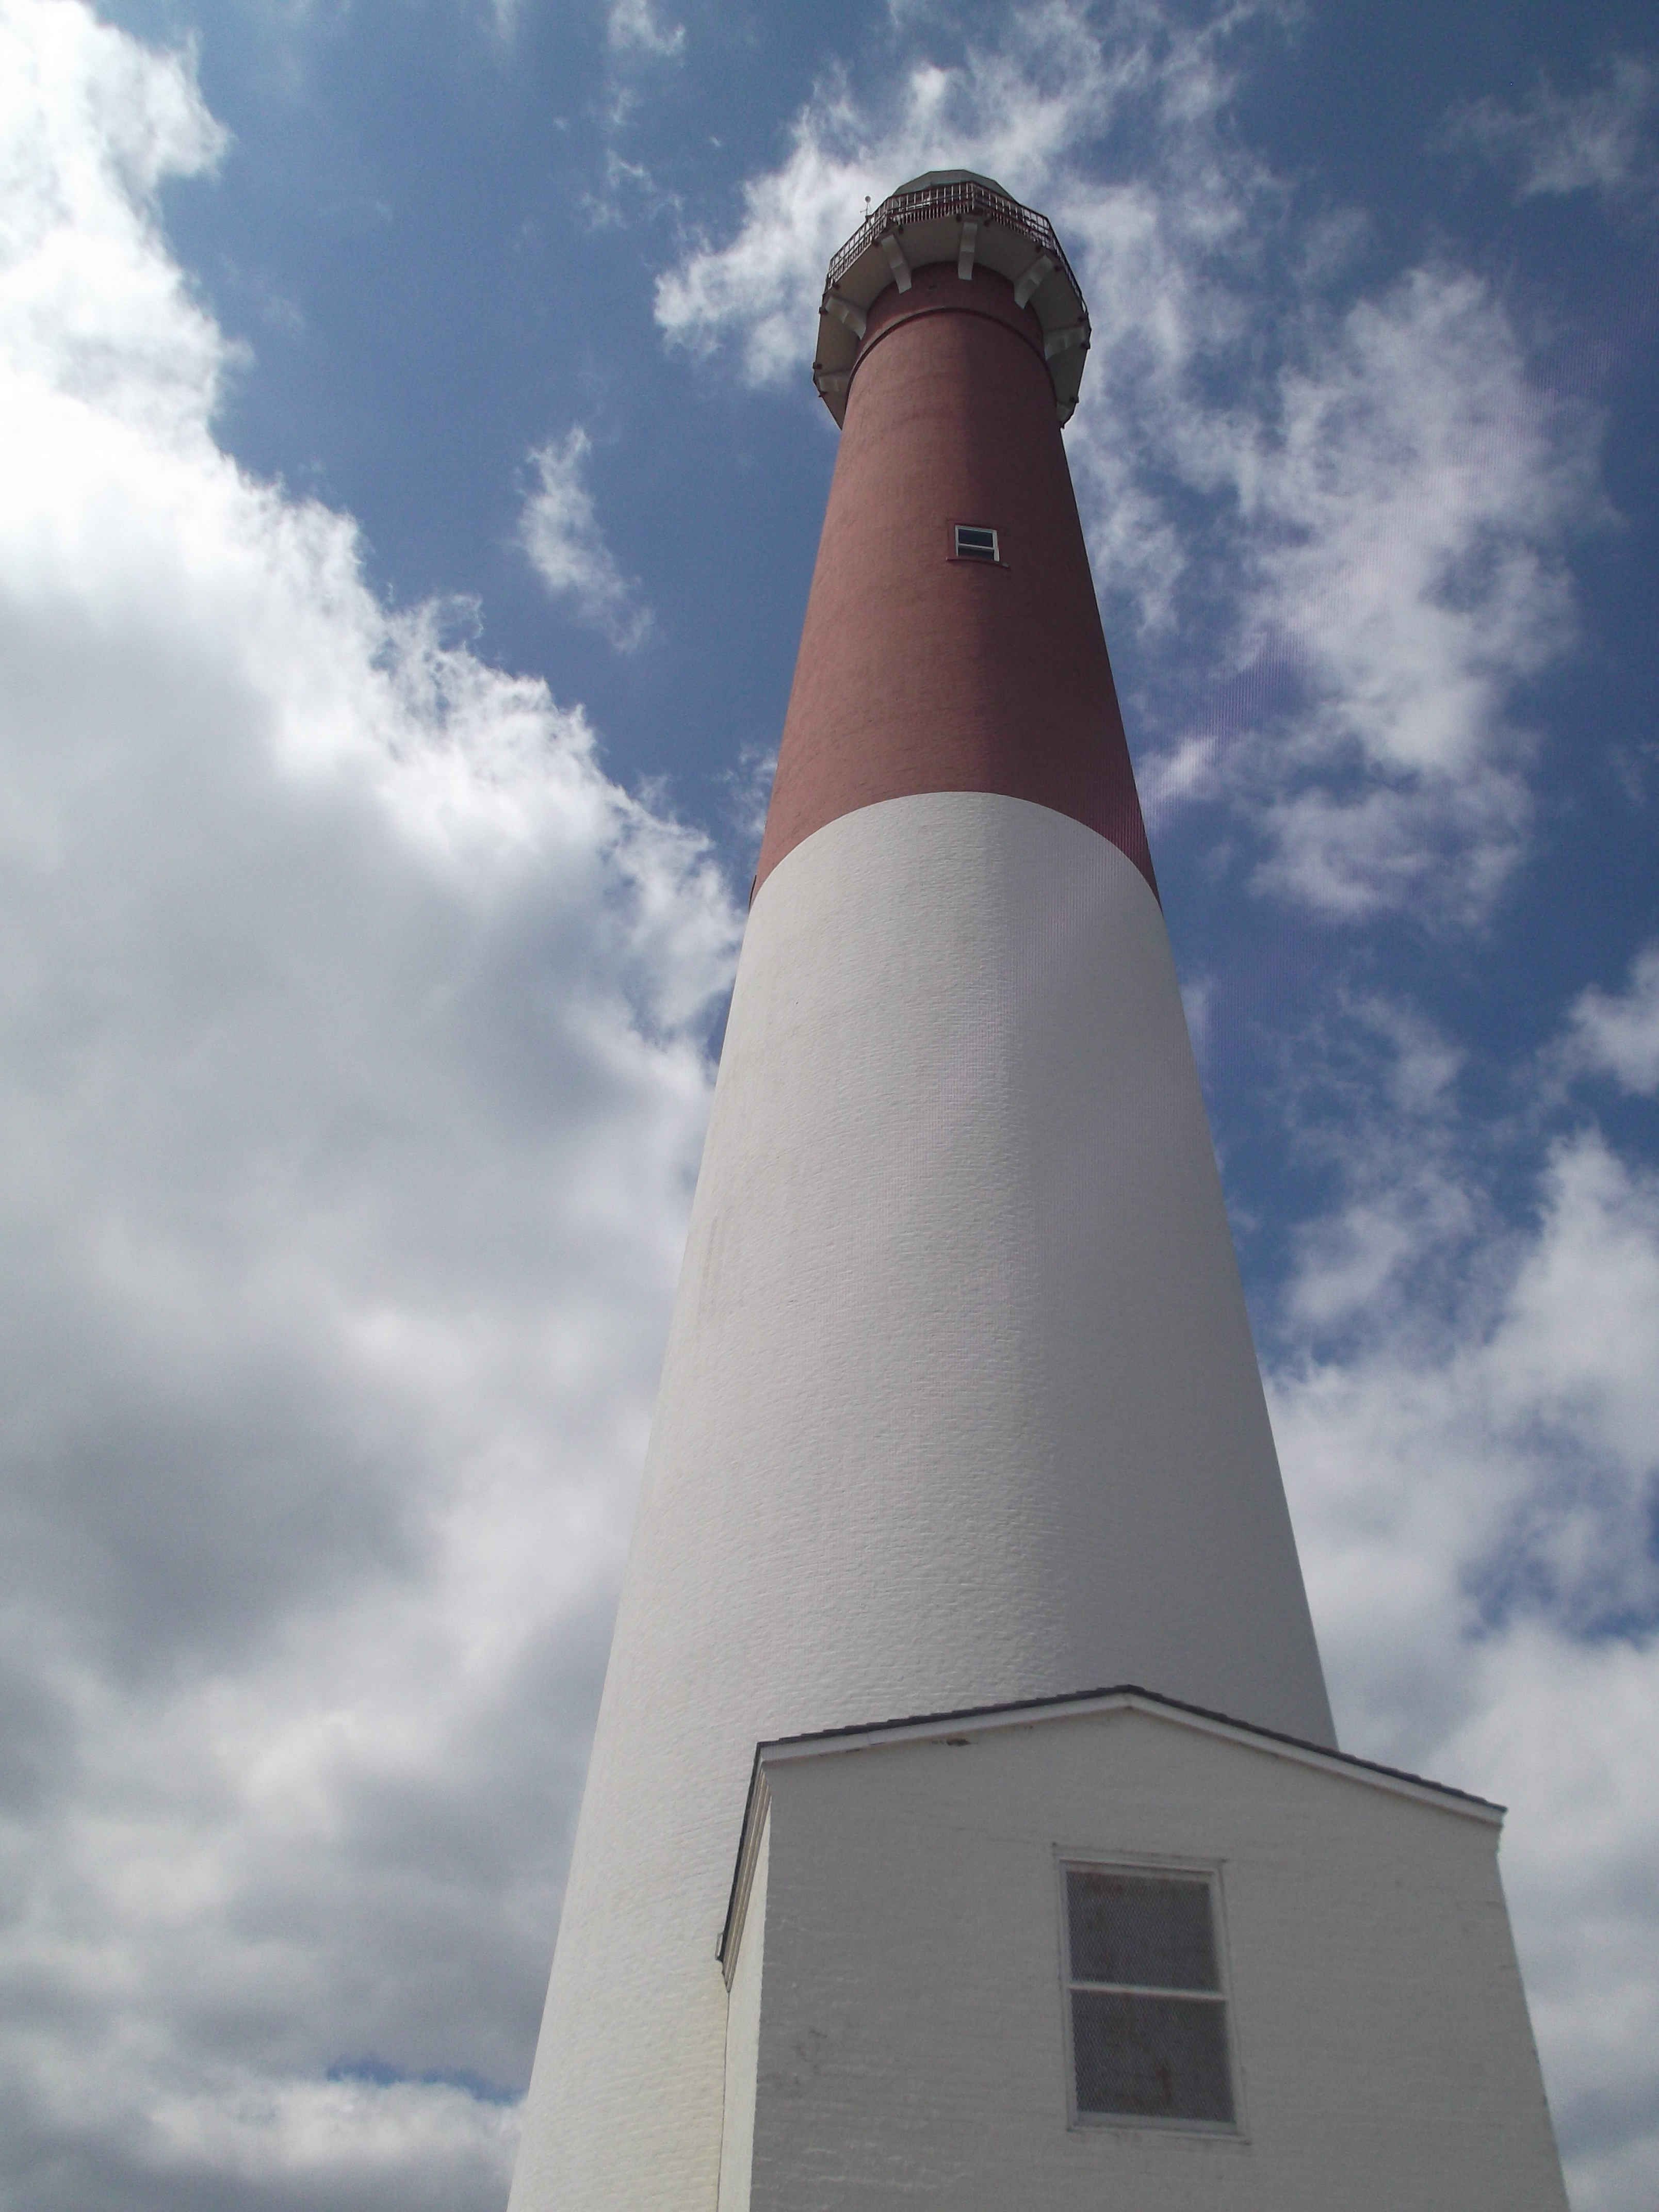 Barnegat Lighthouse Steps